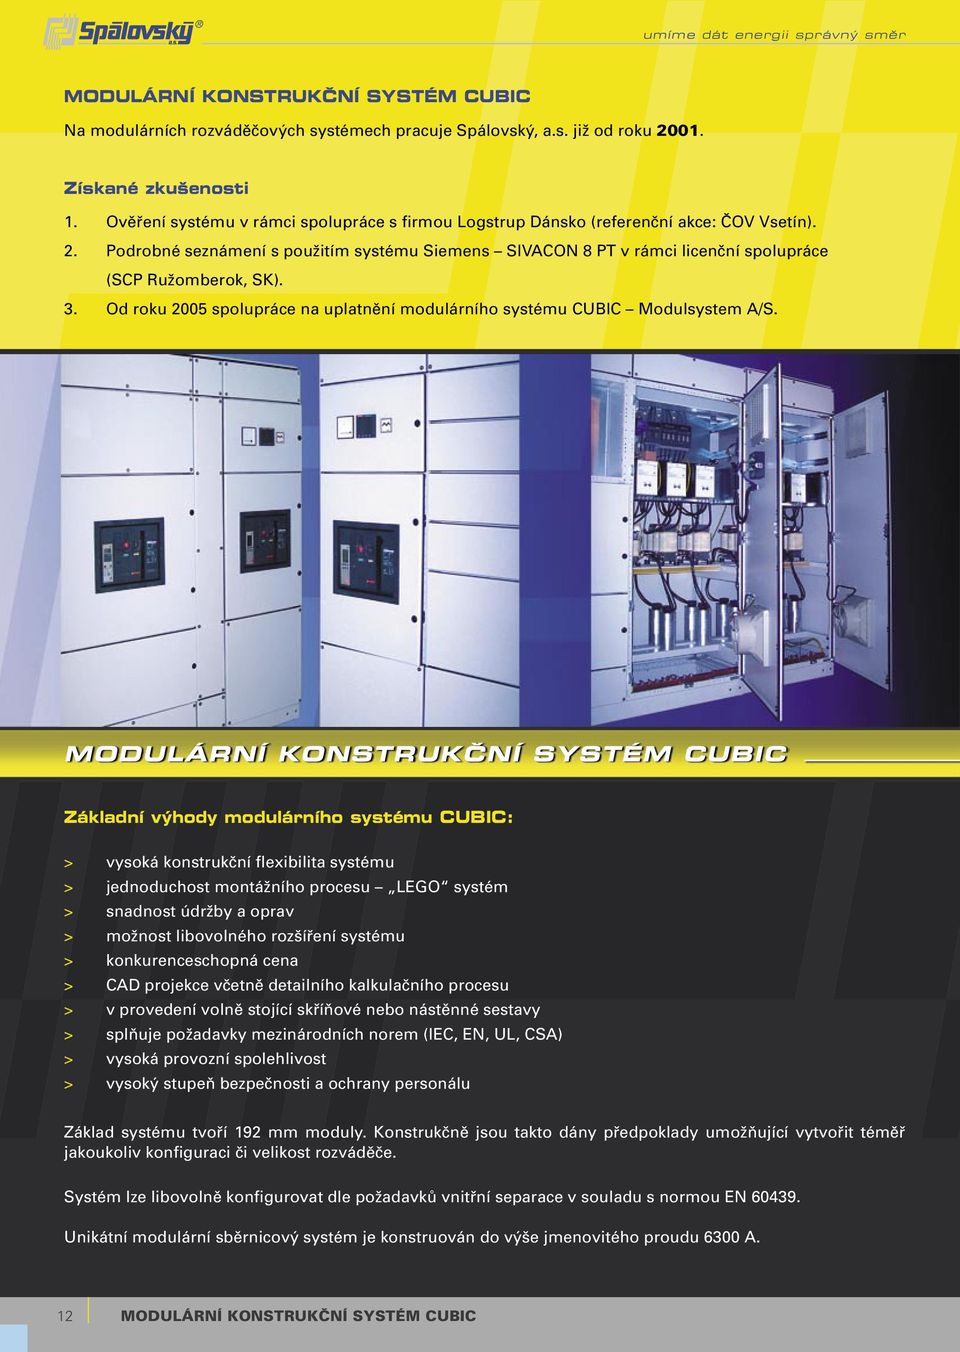 Podrobné seznámení s použitím systému Siemens SIVACON 8 PT v rámci licenční spolupráce (SCP Ružomberok, SK). 3. Od roku 2005 spolupráce na uplatnění modulárního systému CUBIC Modulsystem A/S.